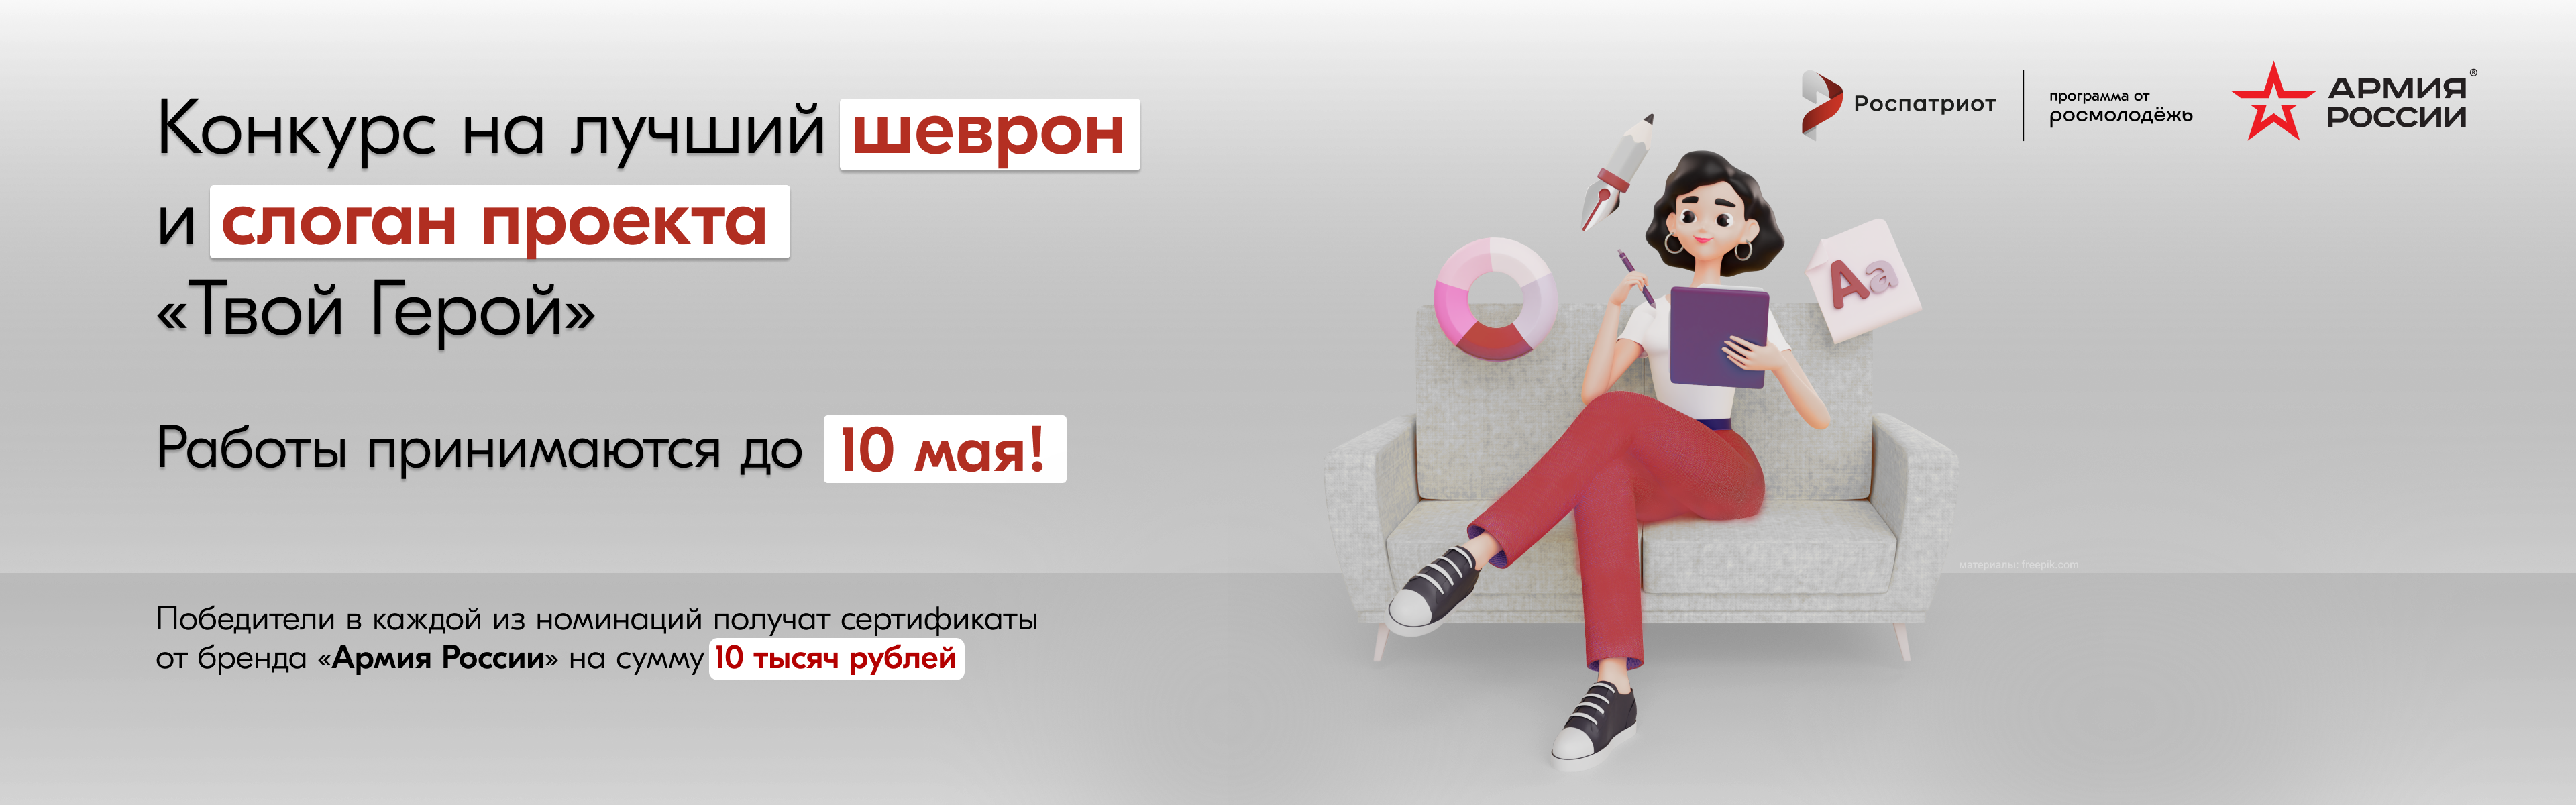 Конкурс на лучший слоган и макет шеврона для проекта «ТВОЙ ГЕРОЙ» запущен программой Роспатриот